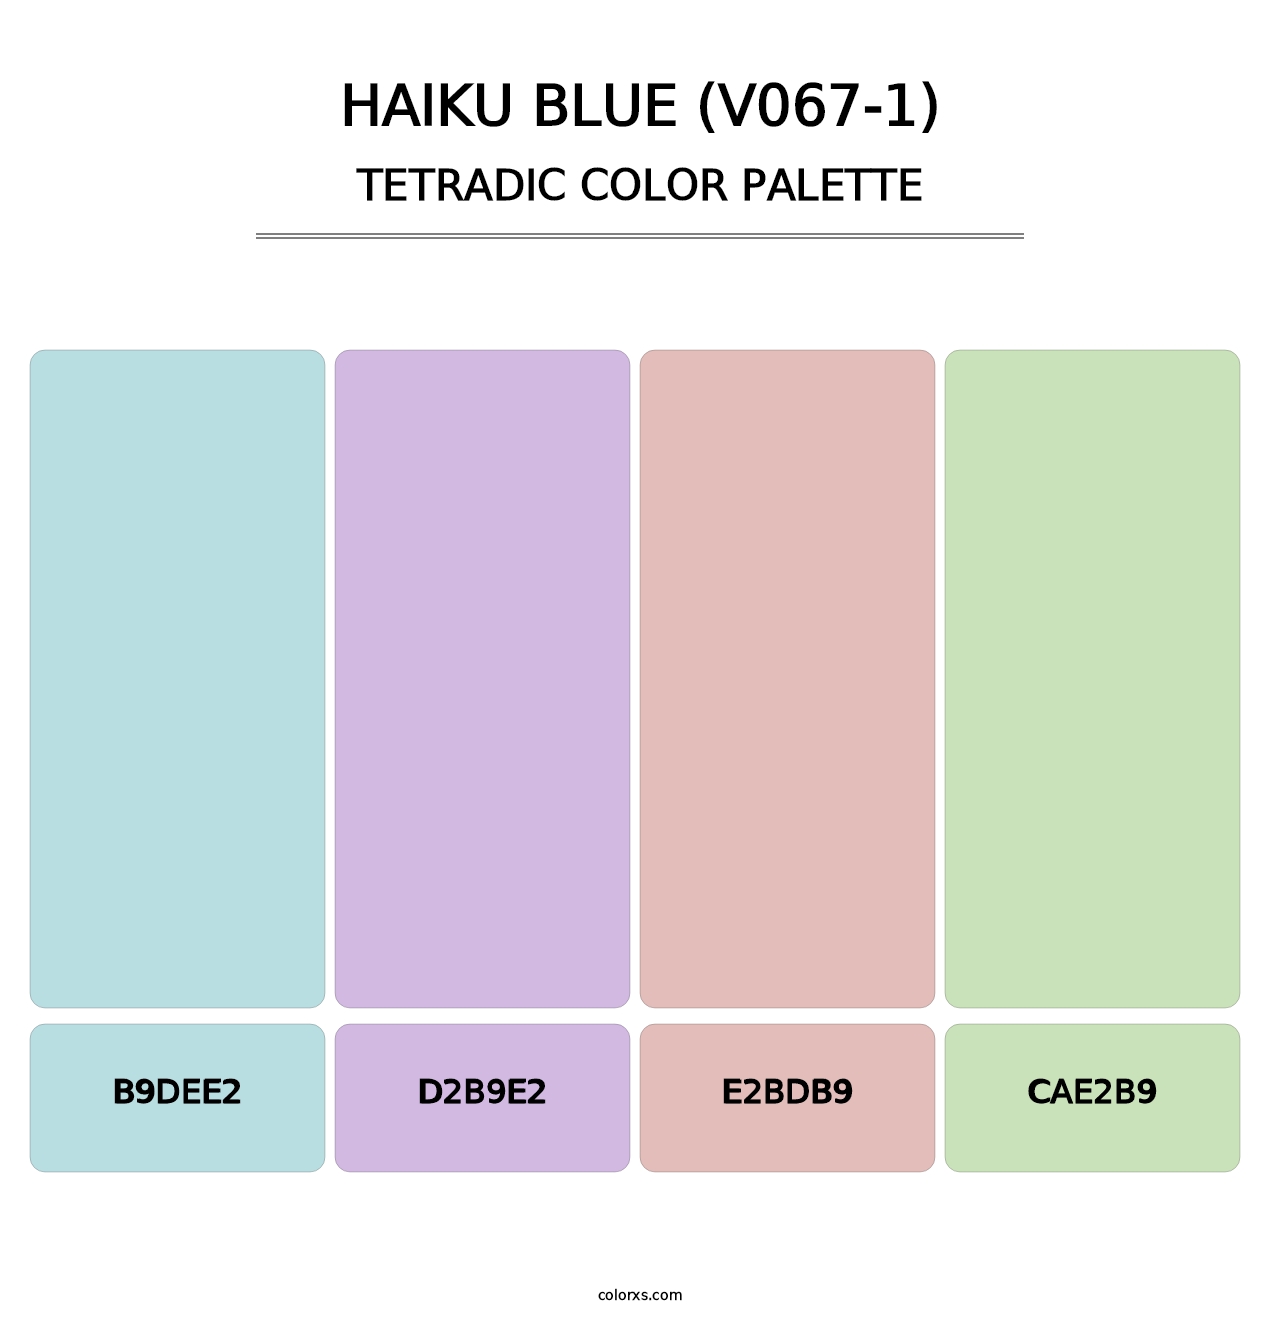 Haiku Blue (V067-1) - Tetradic Color Palette